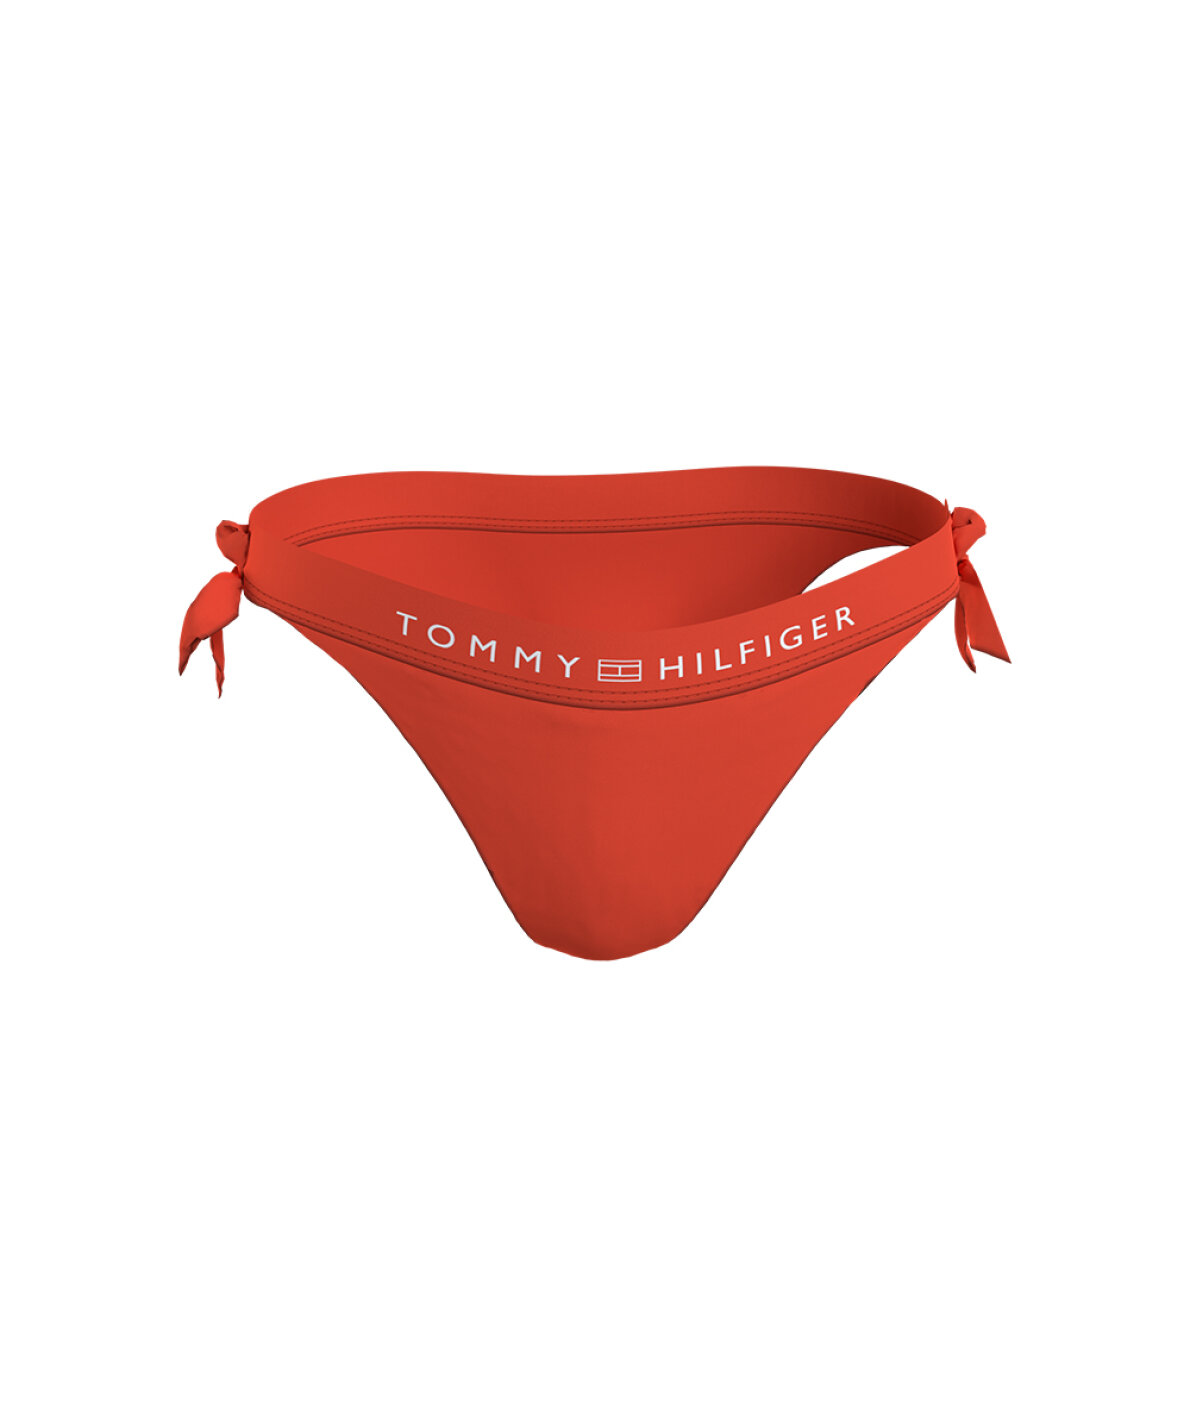 Galaxy Dwelling erotisk Wunderwear - Tonal Logo-S Side Tie - Bikinitrusse fra Tommy Hilfiger